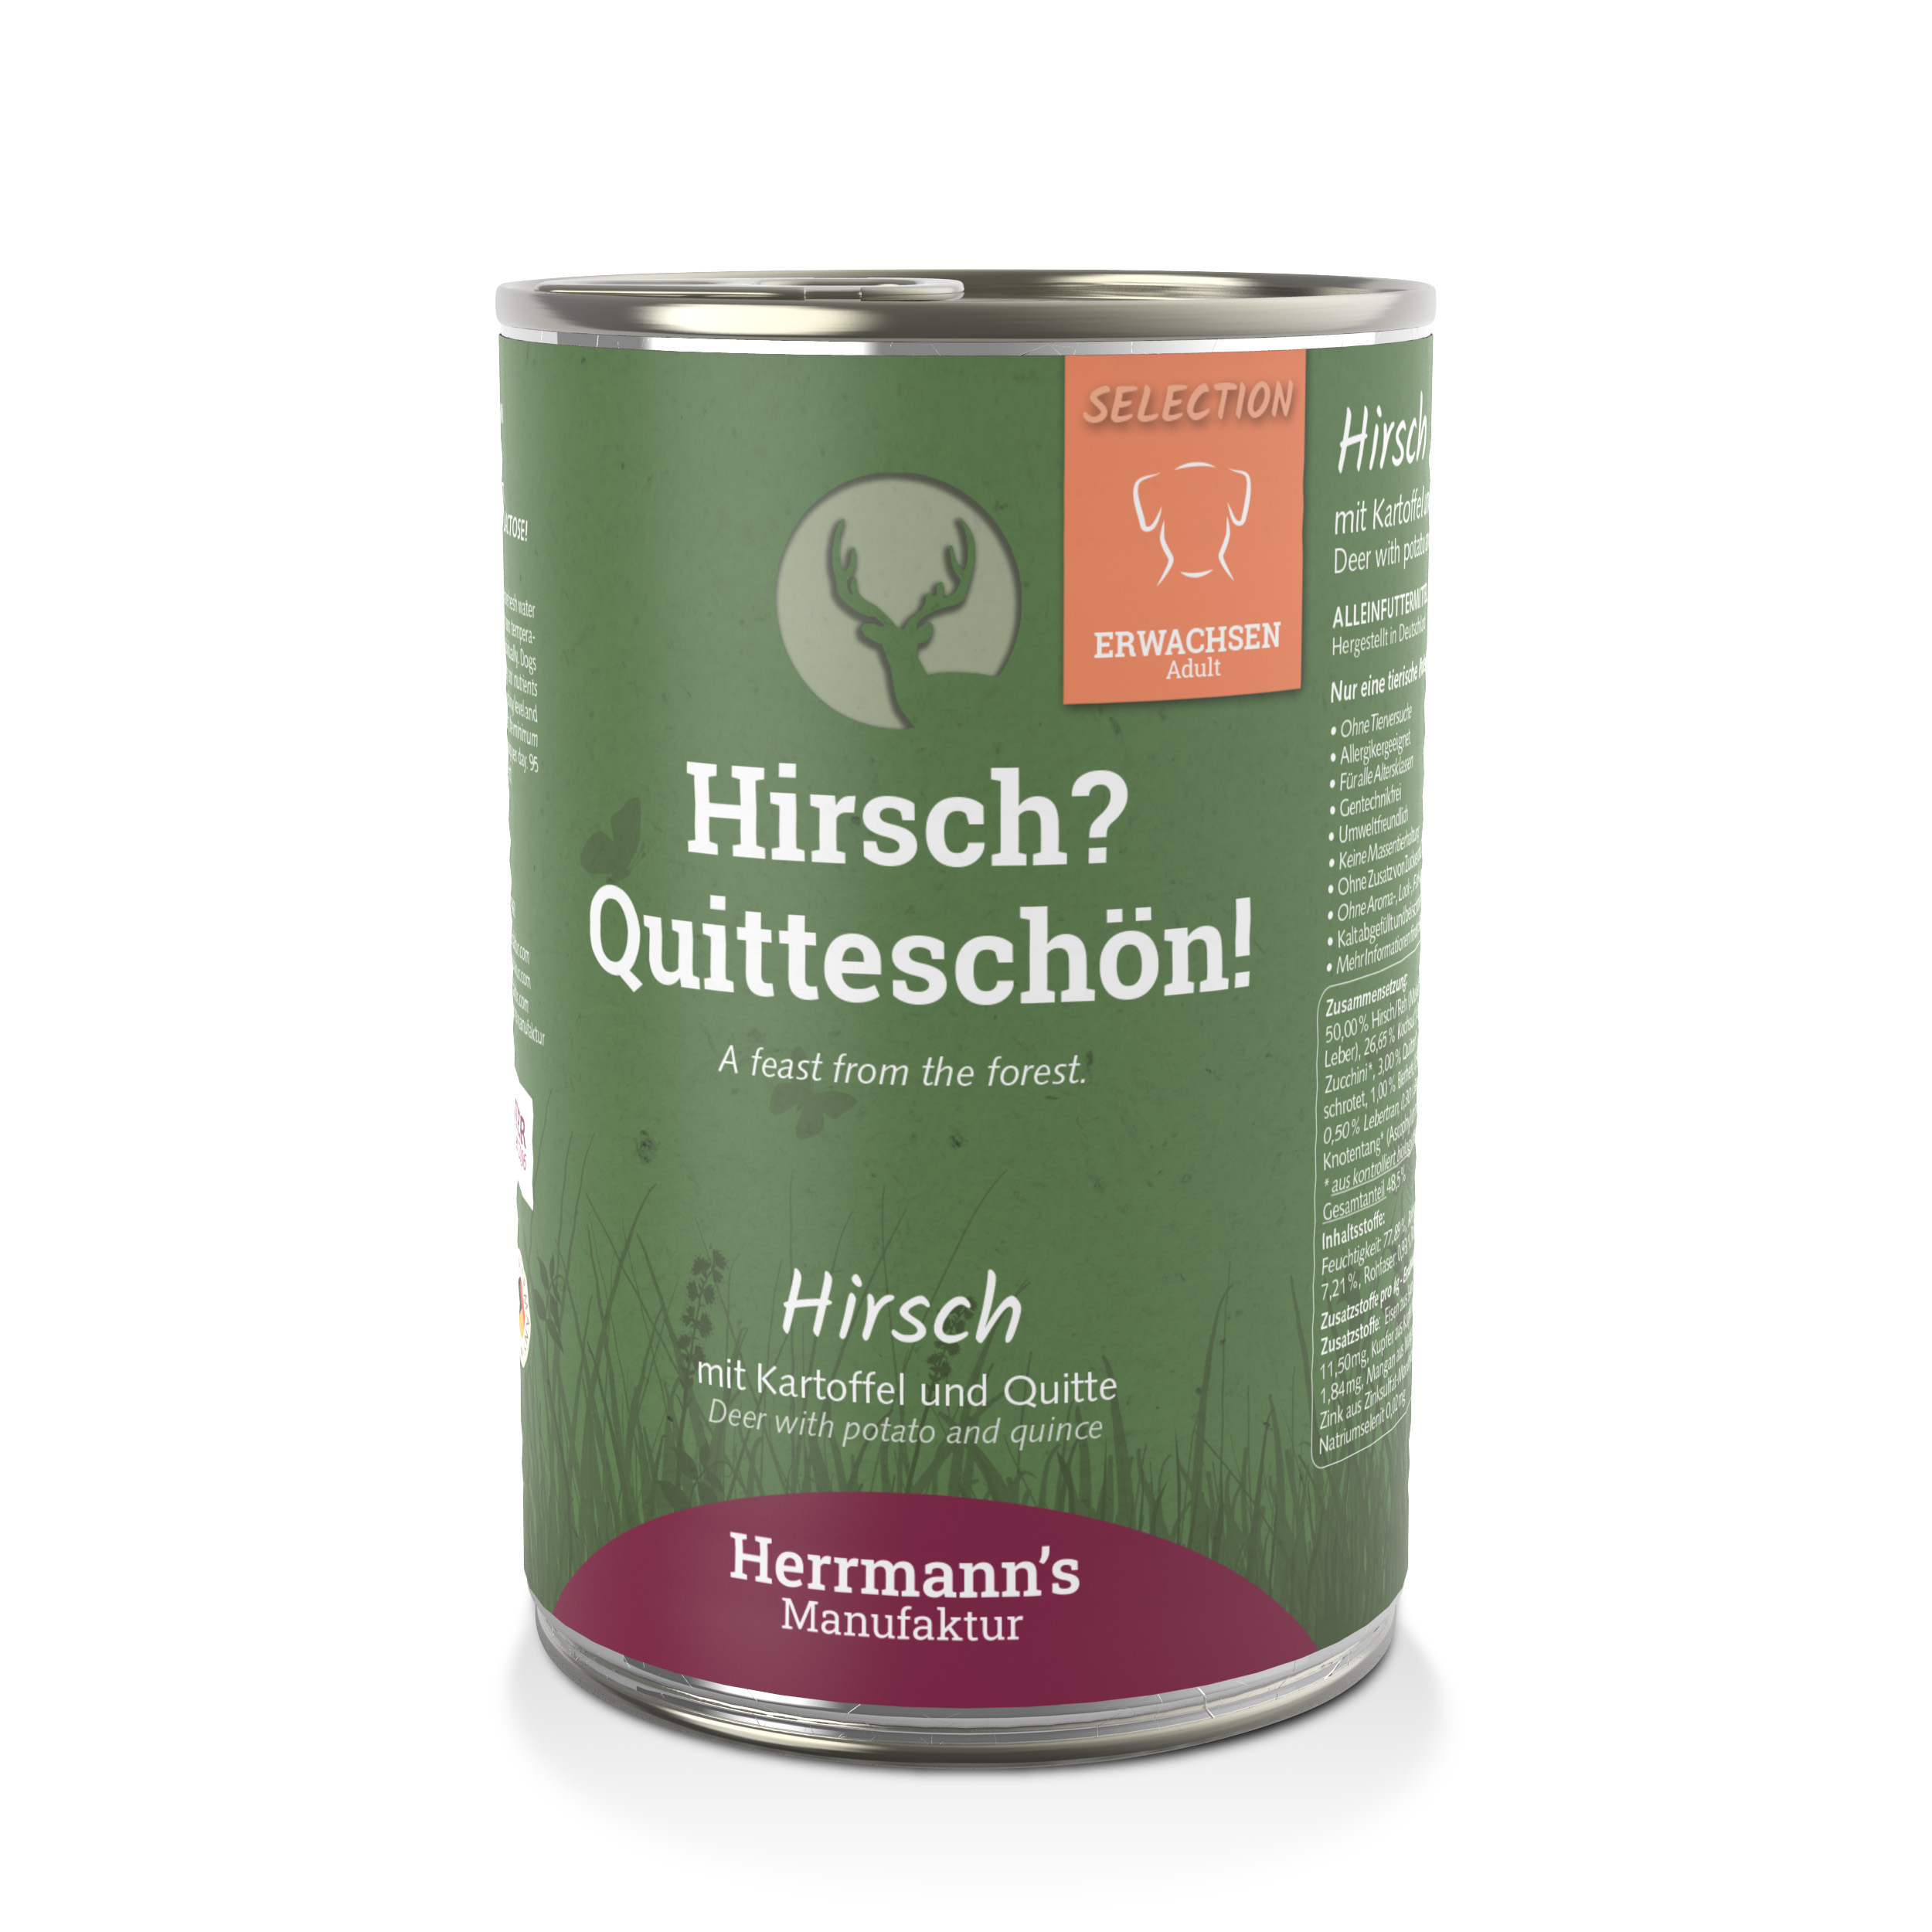 4er-SET Hundefutter Hirsch NICHT BIO mit Kartoffel und Quitte 400g Herrmann's - Bild 1